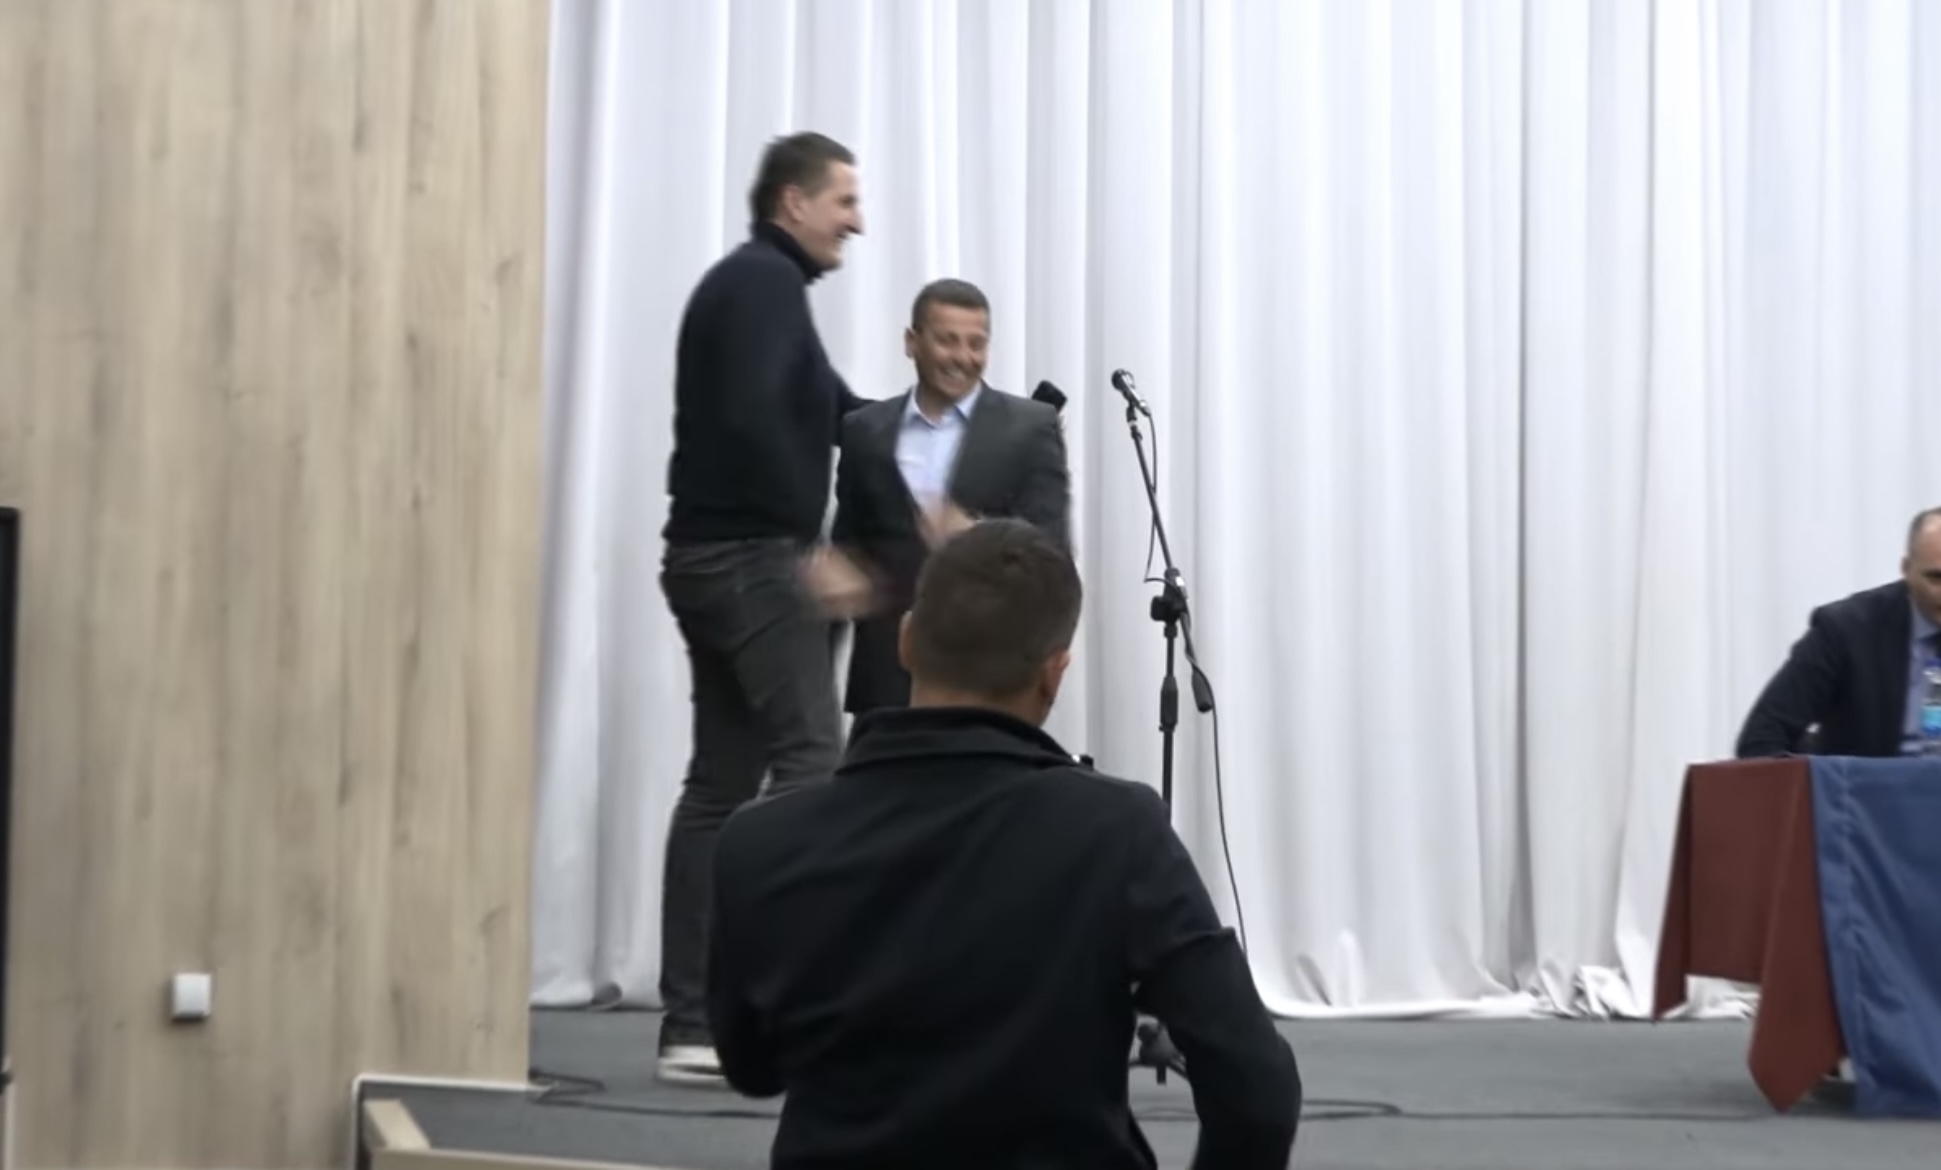 OVO JOŠ NISTE VIDJELI Vukanović i Elek zajedno na bini, otvoren razgovor uz osmjeh i zagrljaj (VIDEO)